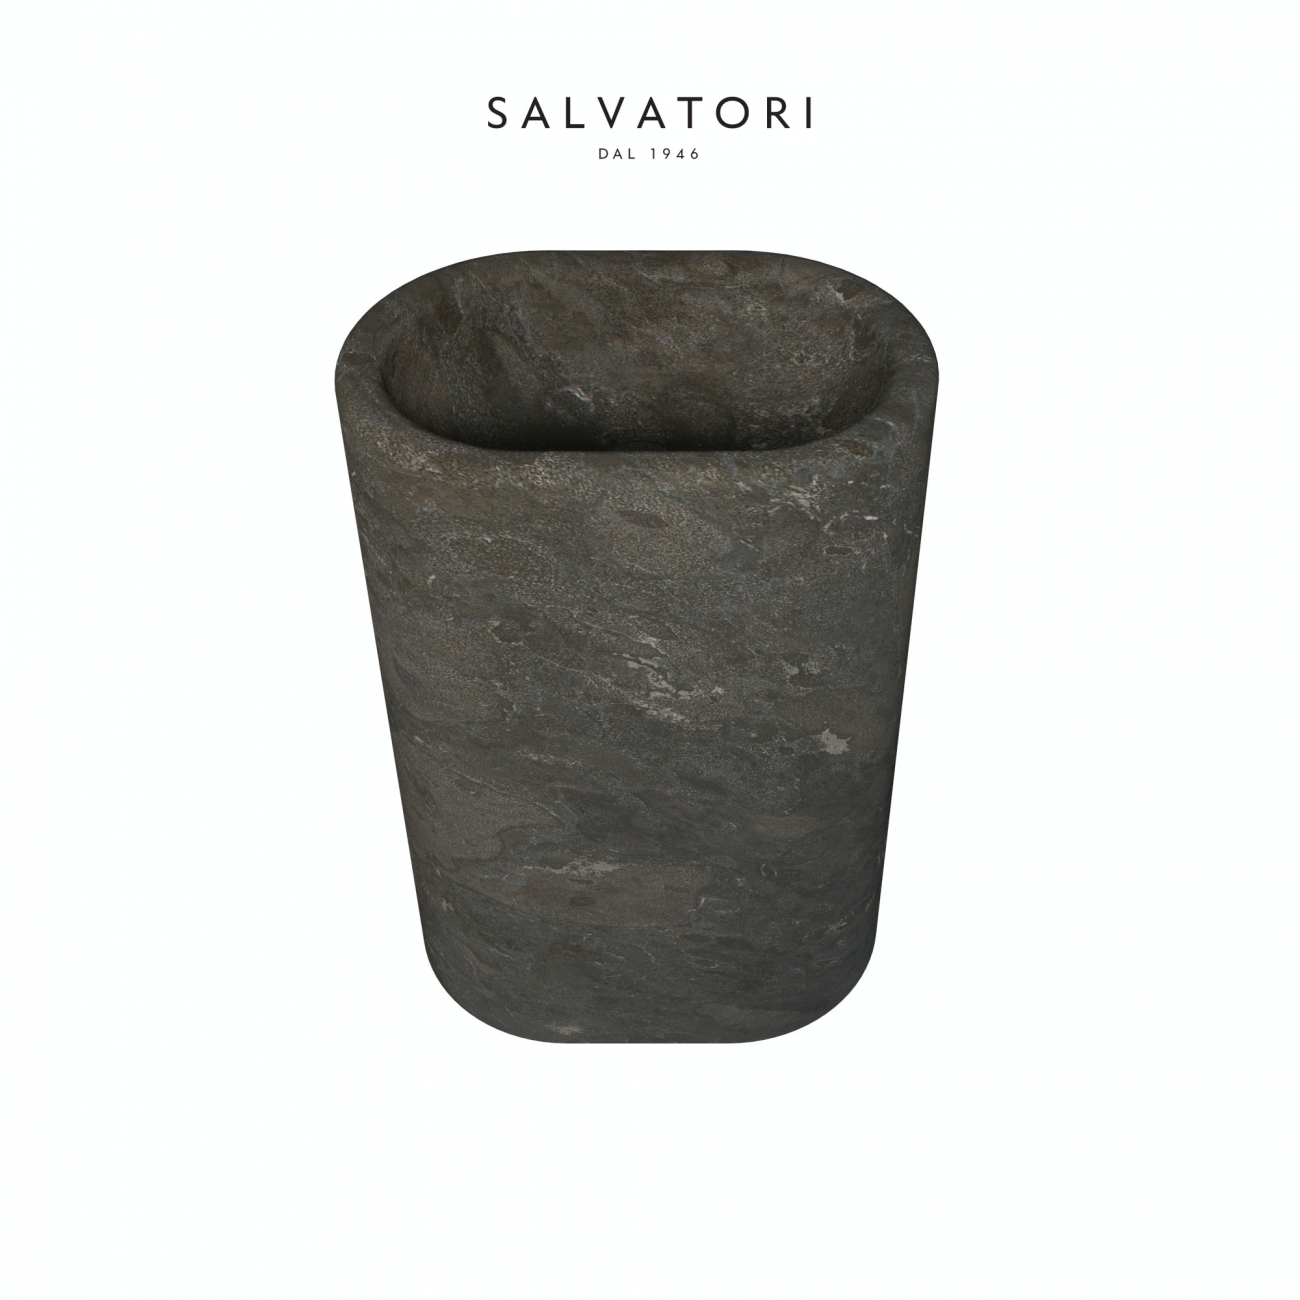 Salvatori Balnea Lavabo Freestanding